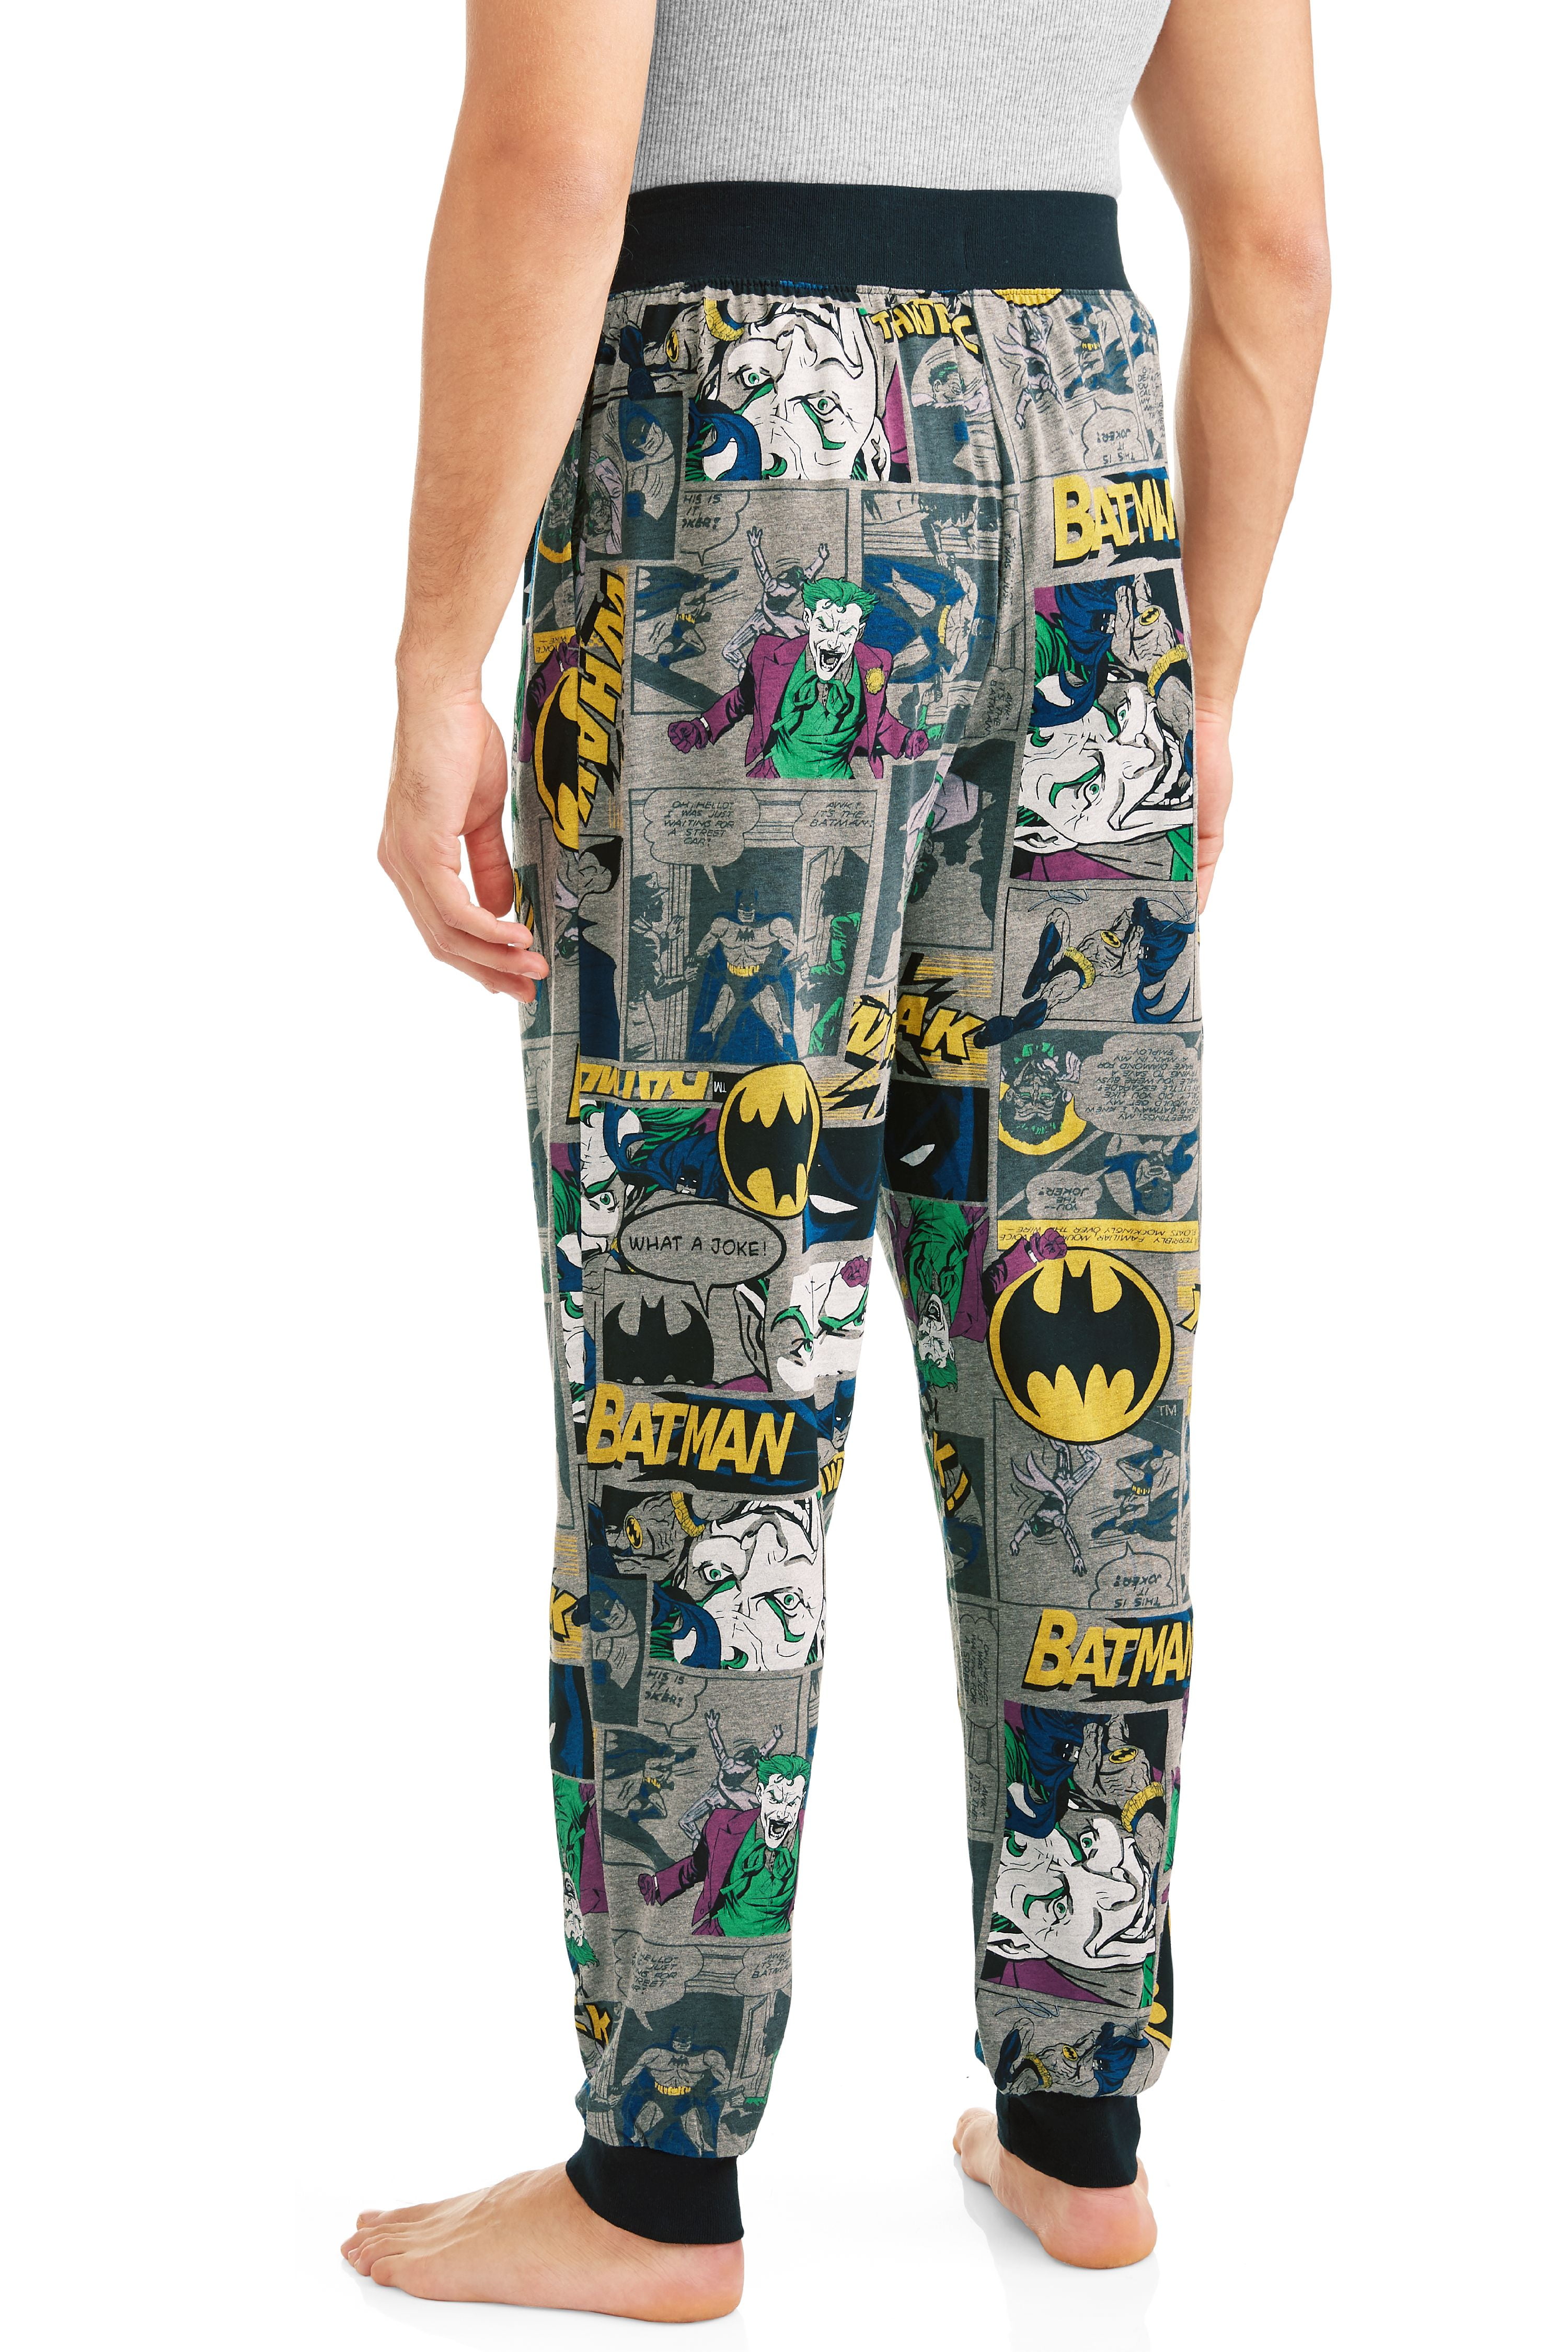 Clancy Maryanne Jones Volgen DC Comics Men's Batman Joker Jogger Lounge Pant - Walmart.com